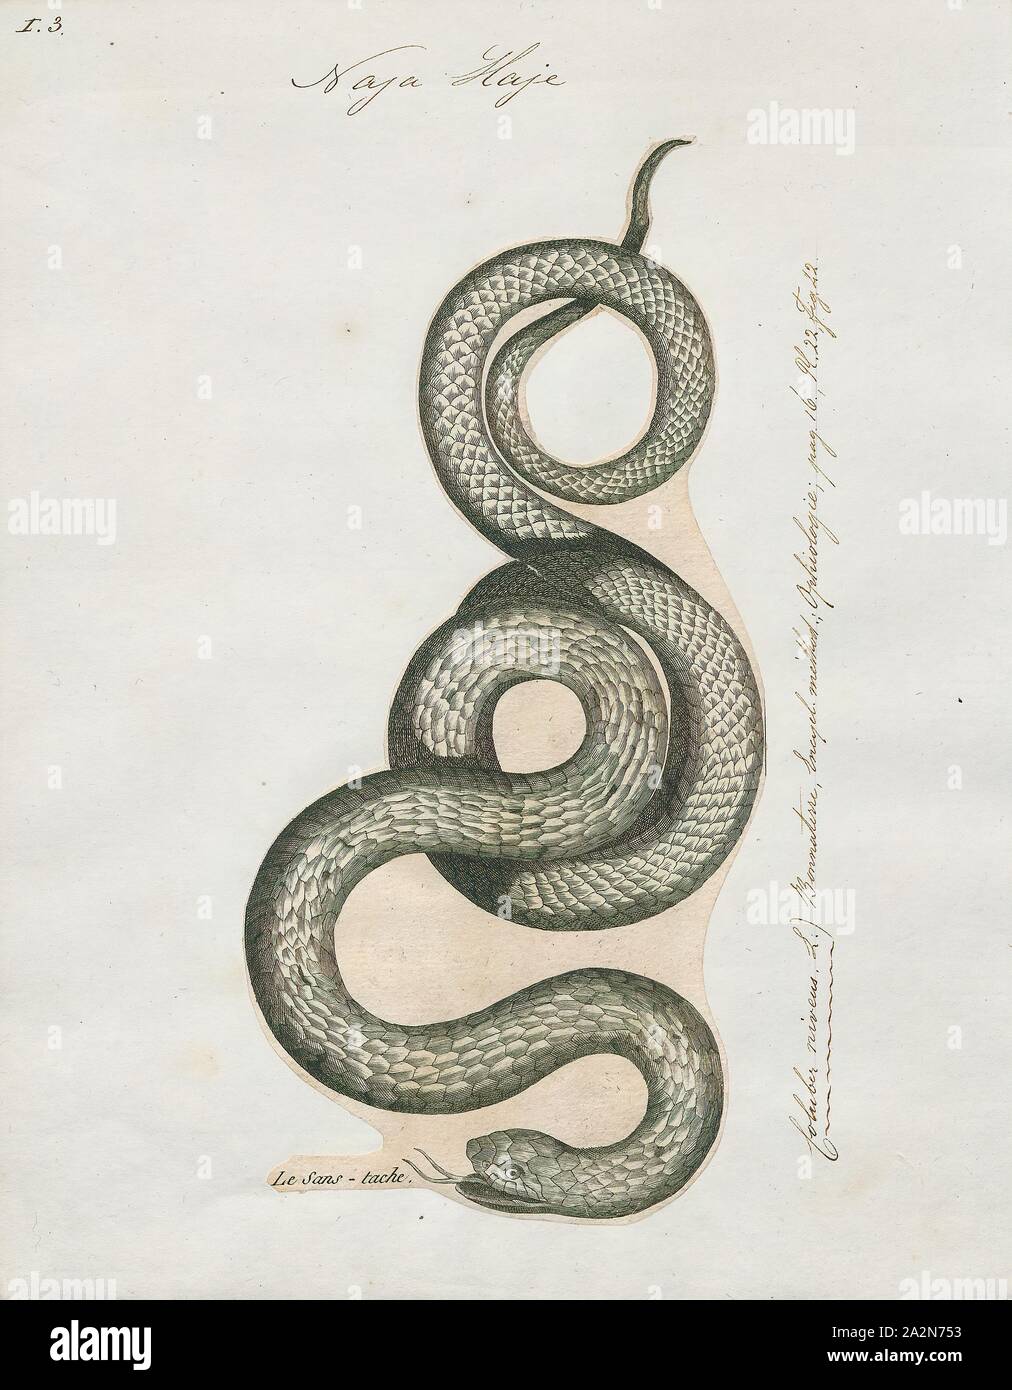 Naja haje, Print, The Egyptian cobra (Naja haje) is a species of venomous snake in the family Elapidae. Naja haje is one of the largest cobra species native to Africa, second to the forest cobra (Naja melanoleuca)., 1700-1880 Stock Photo